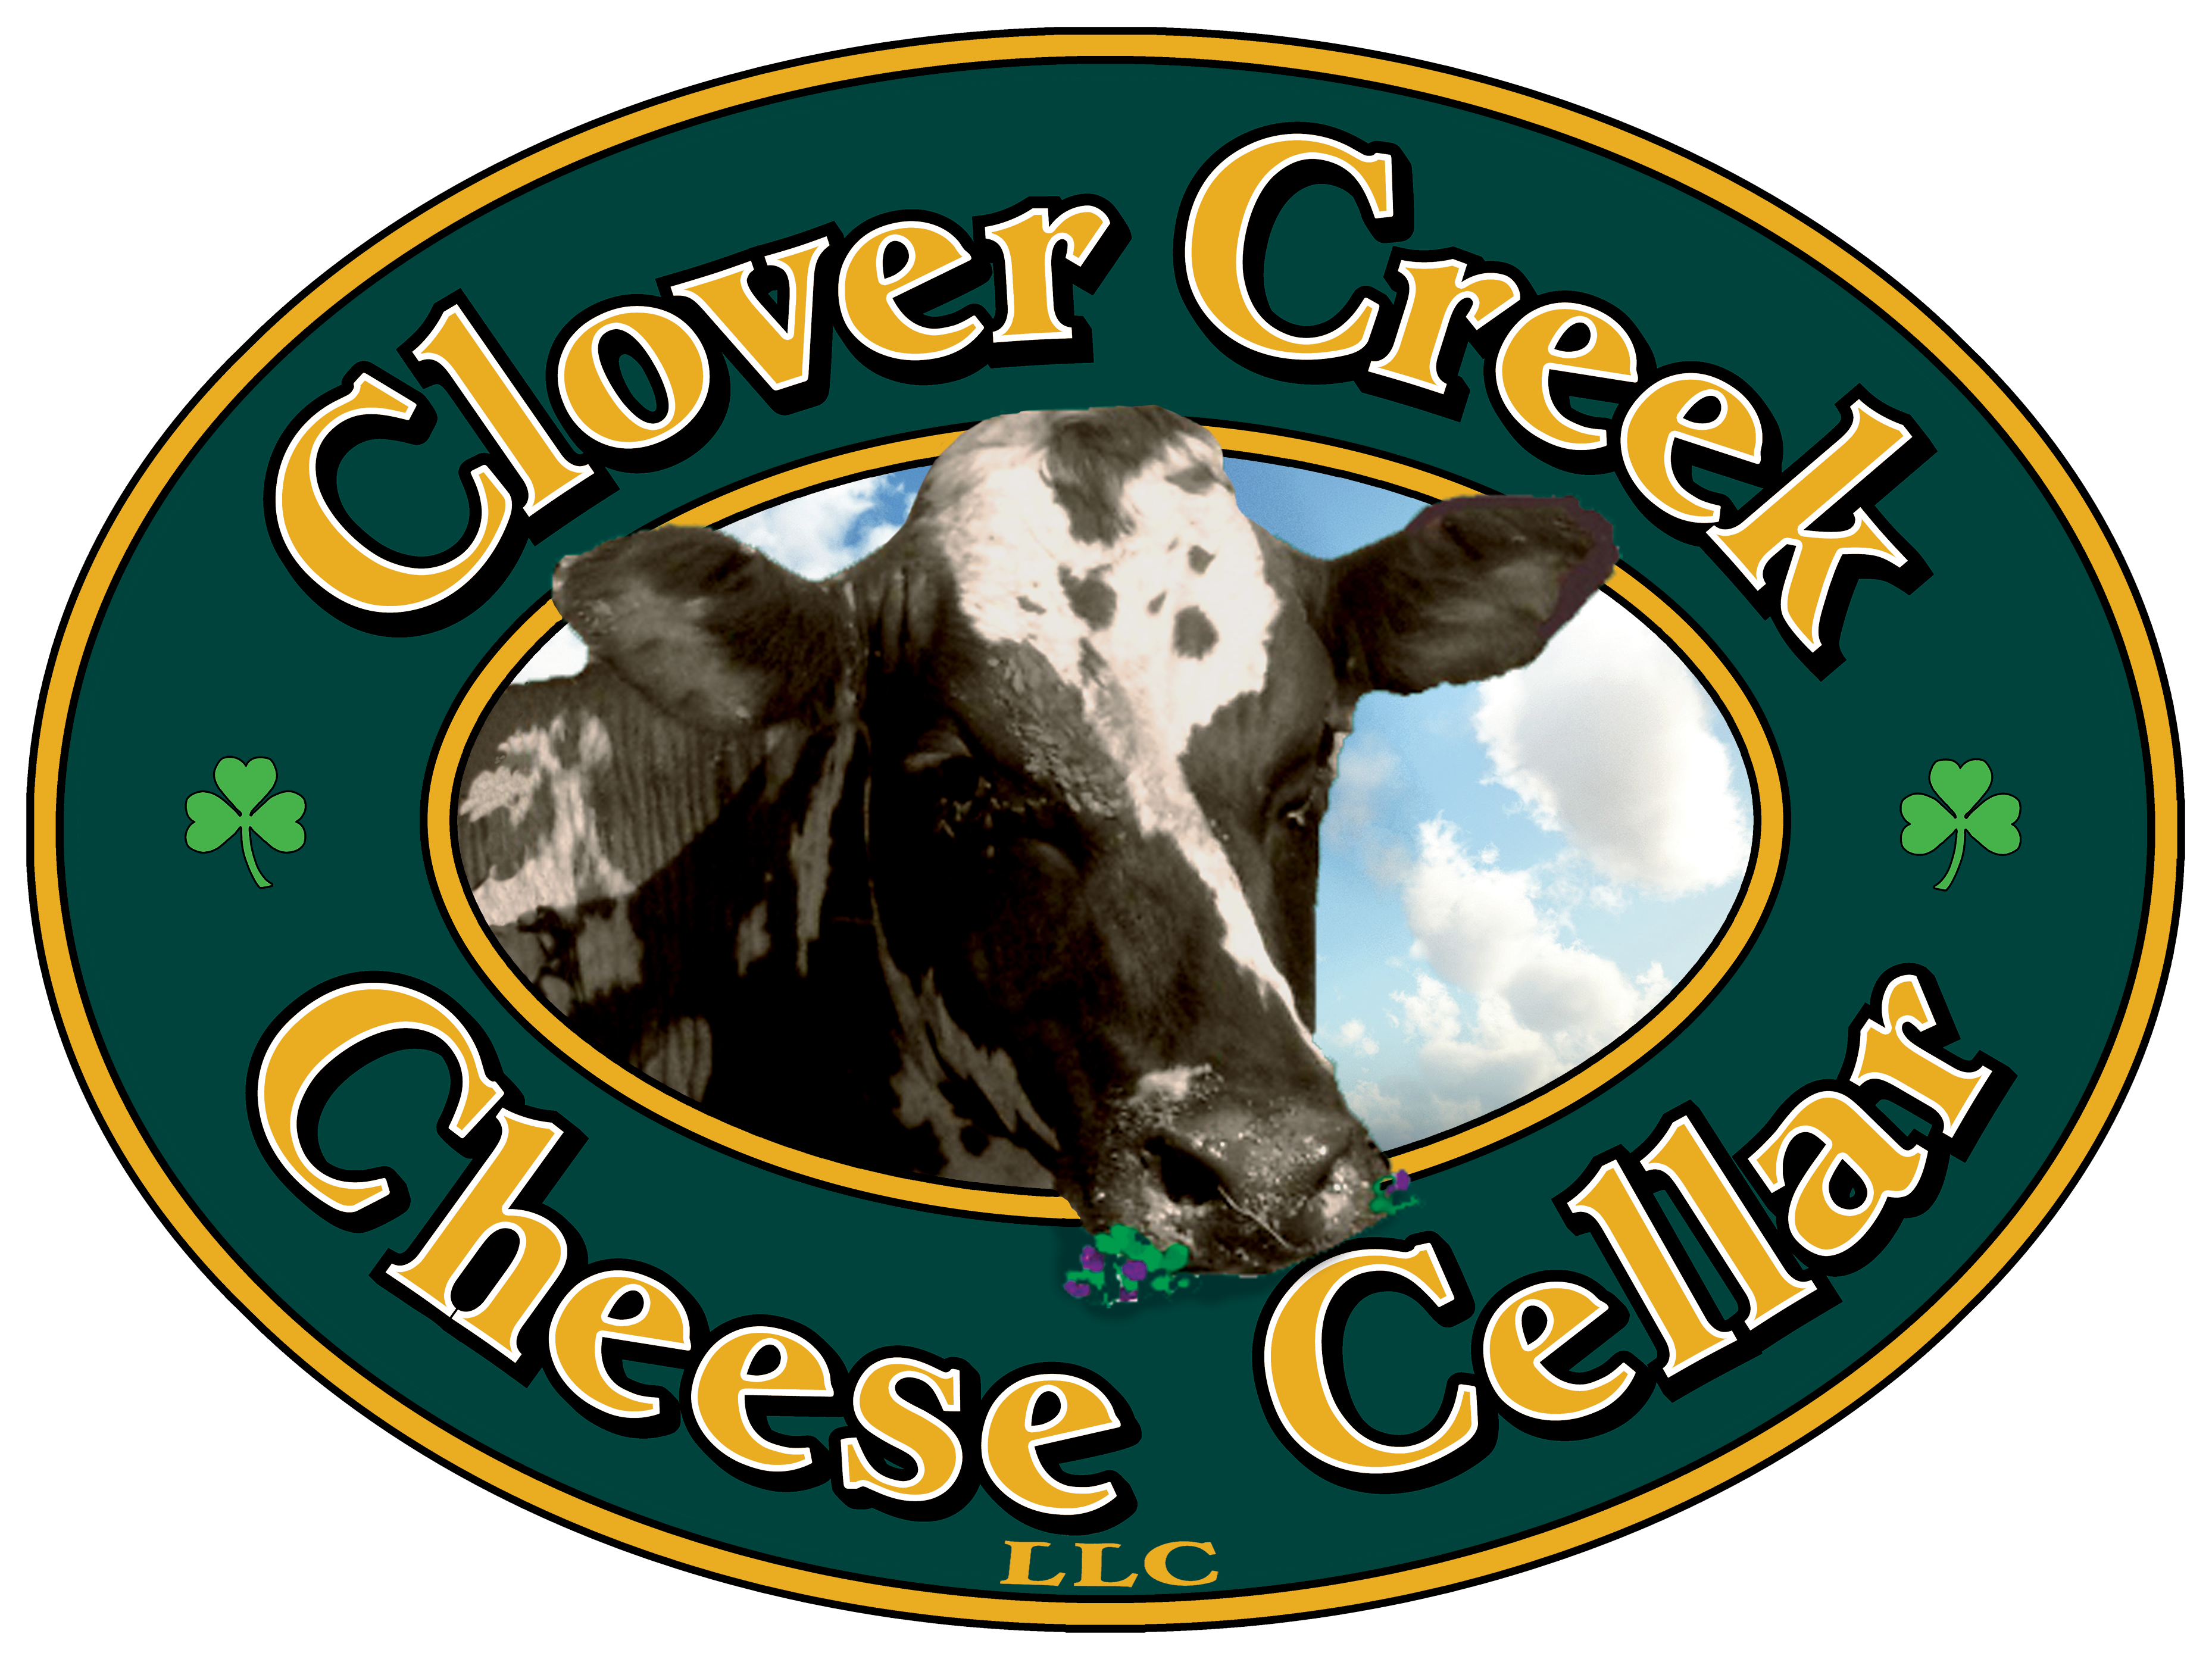 Clover Creek Cheese Cellar